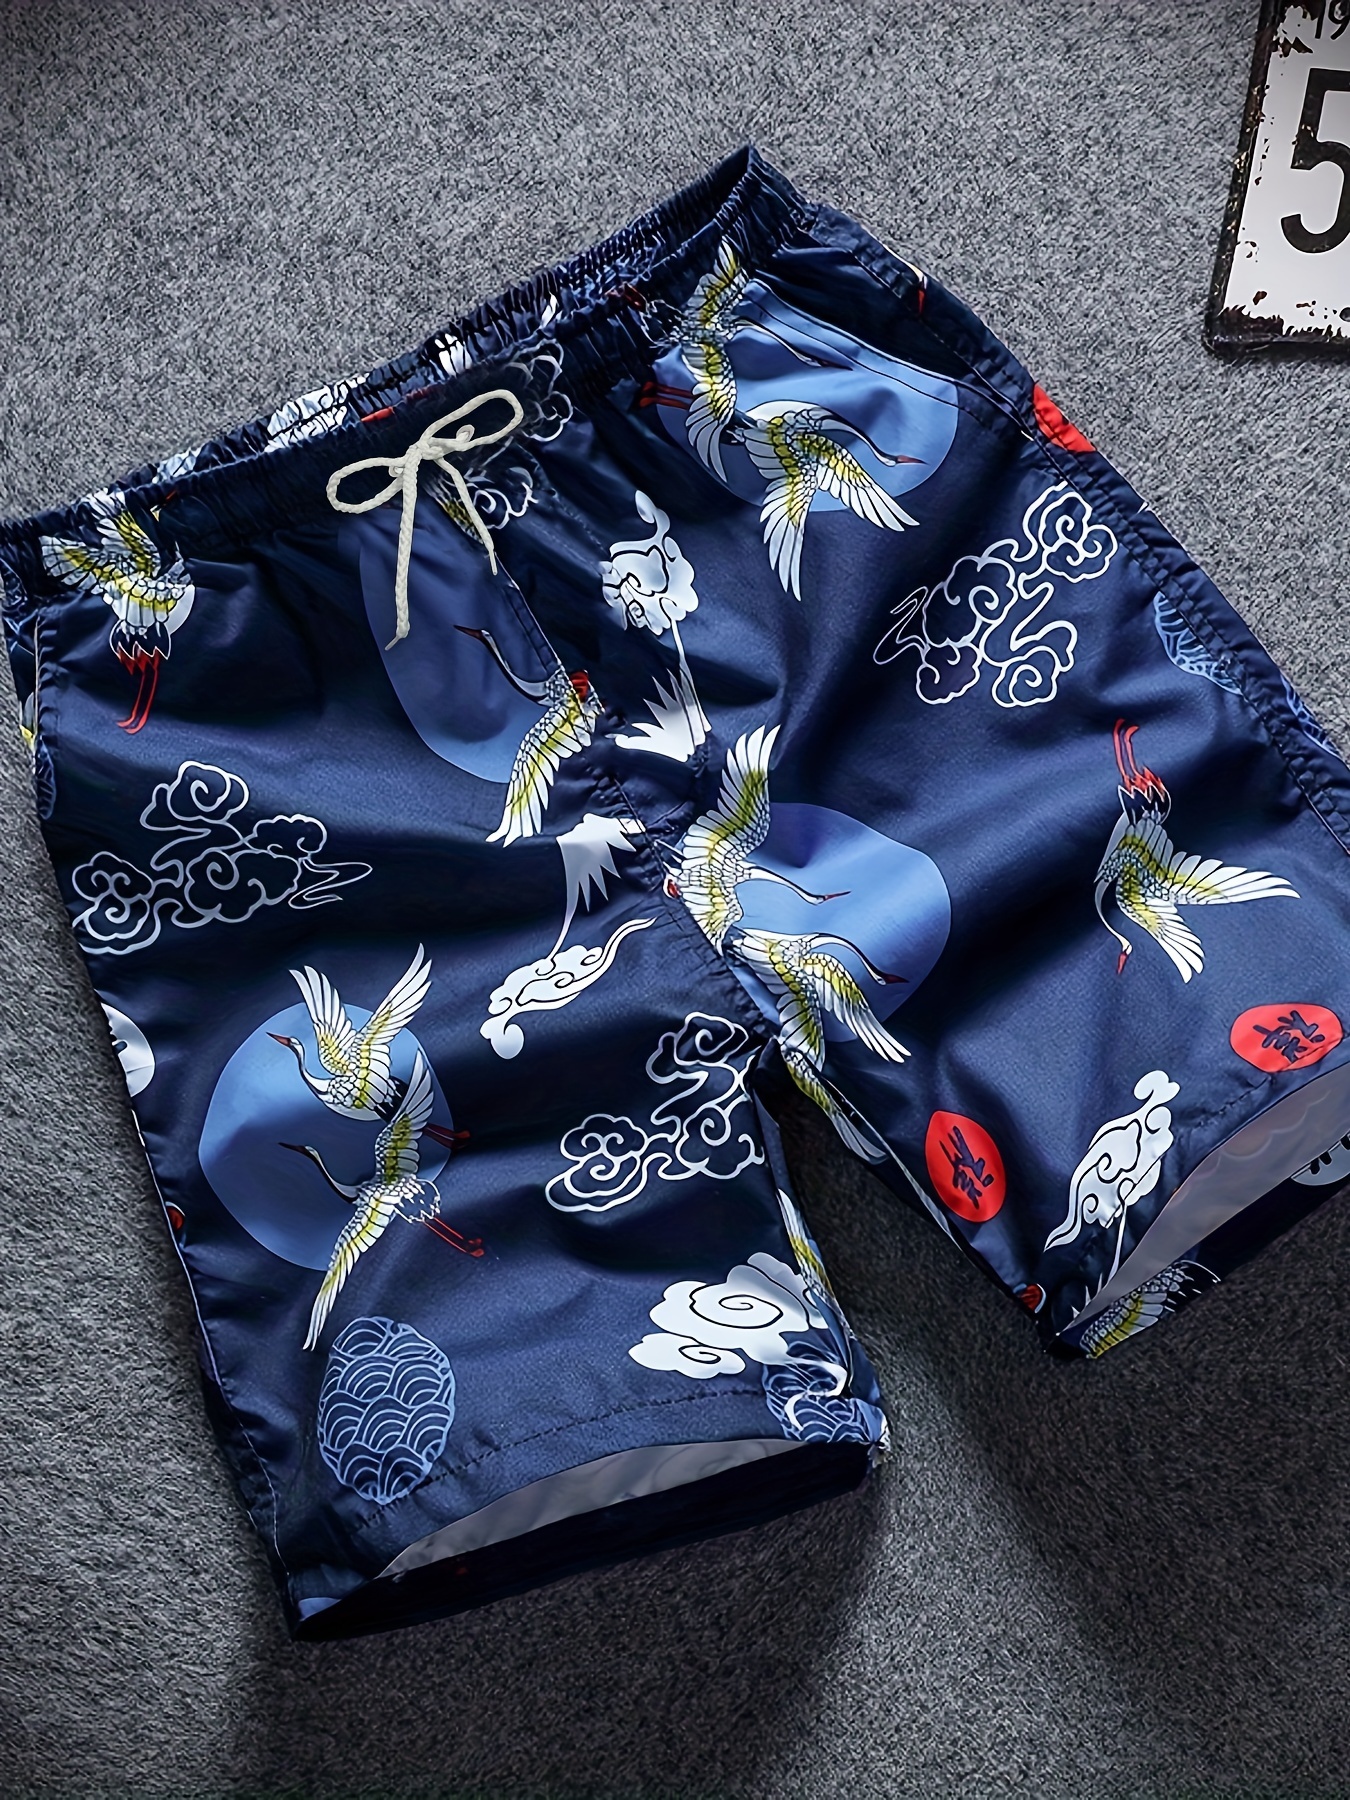 Men's Designer Swimwear, Swim Trunks & Shorts